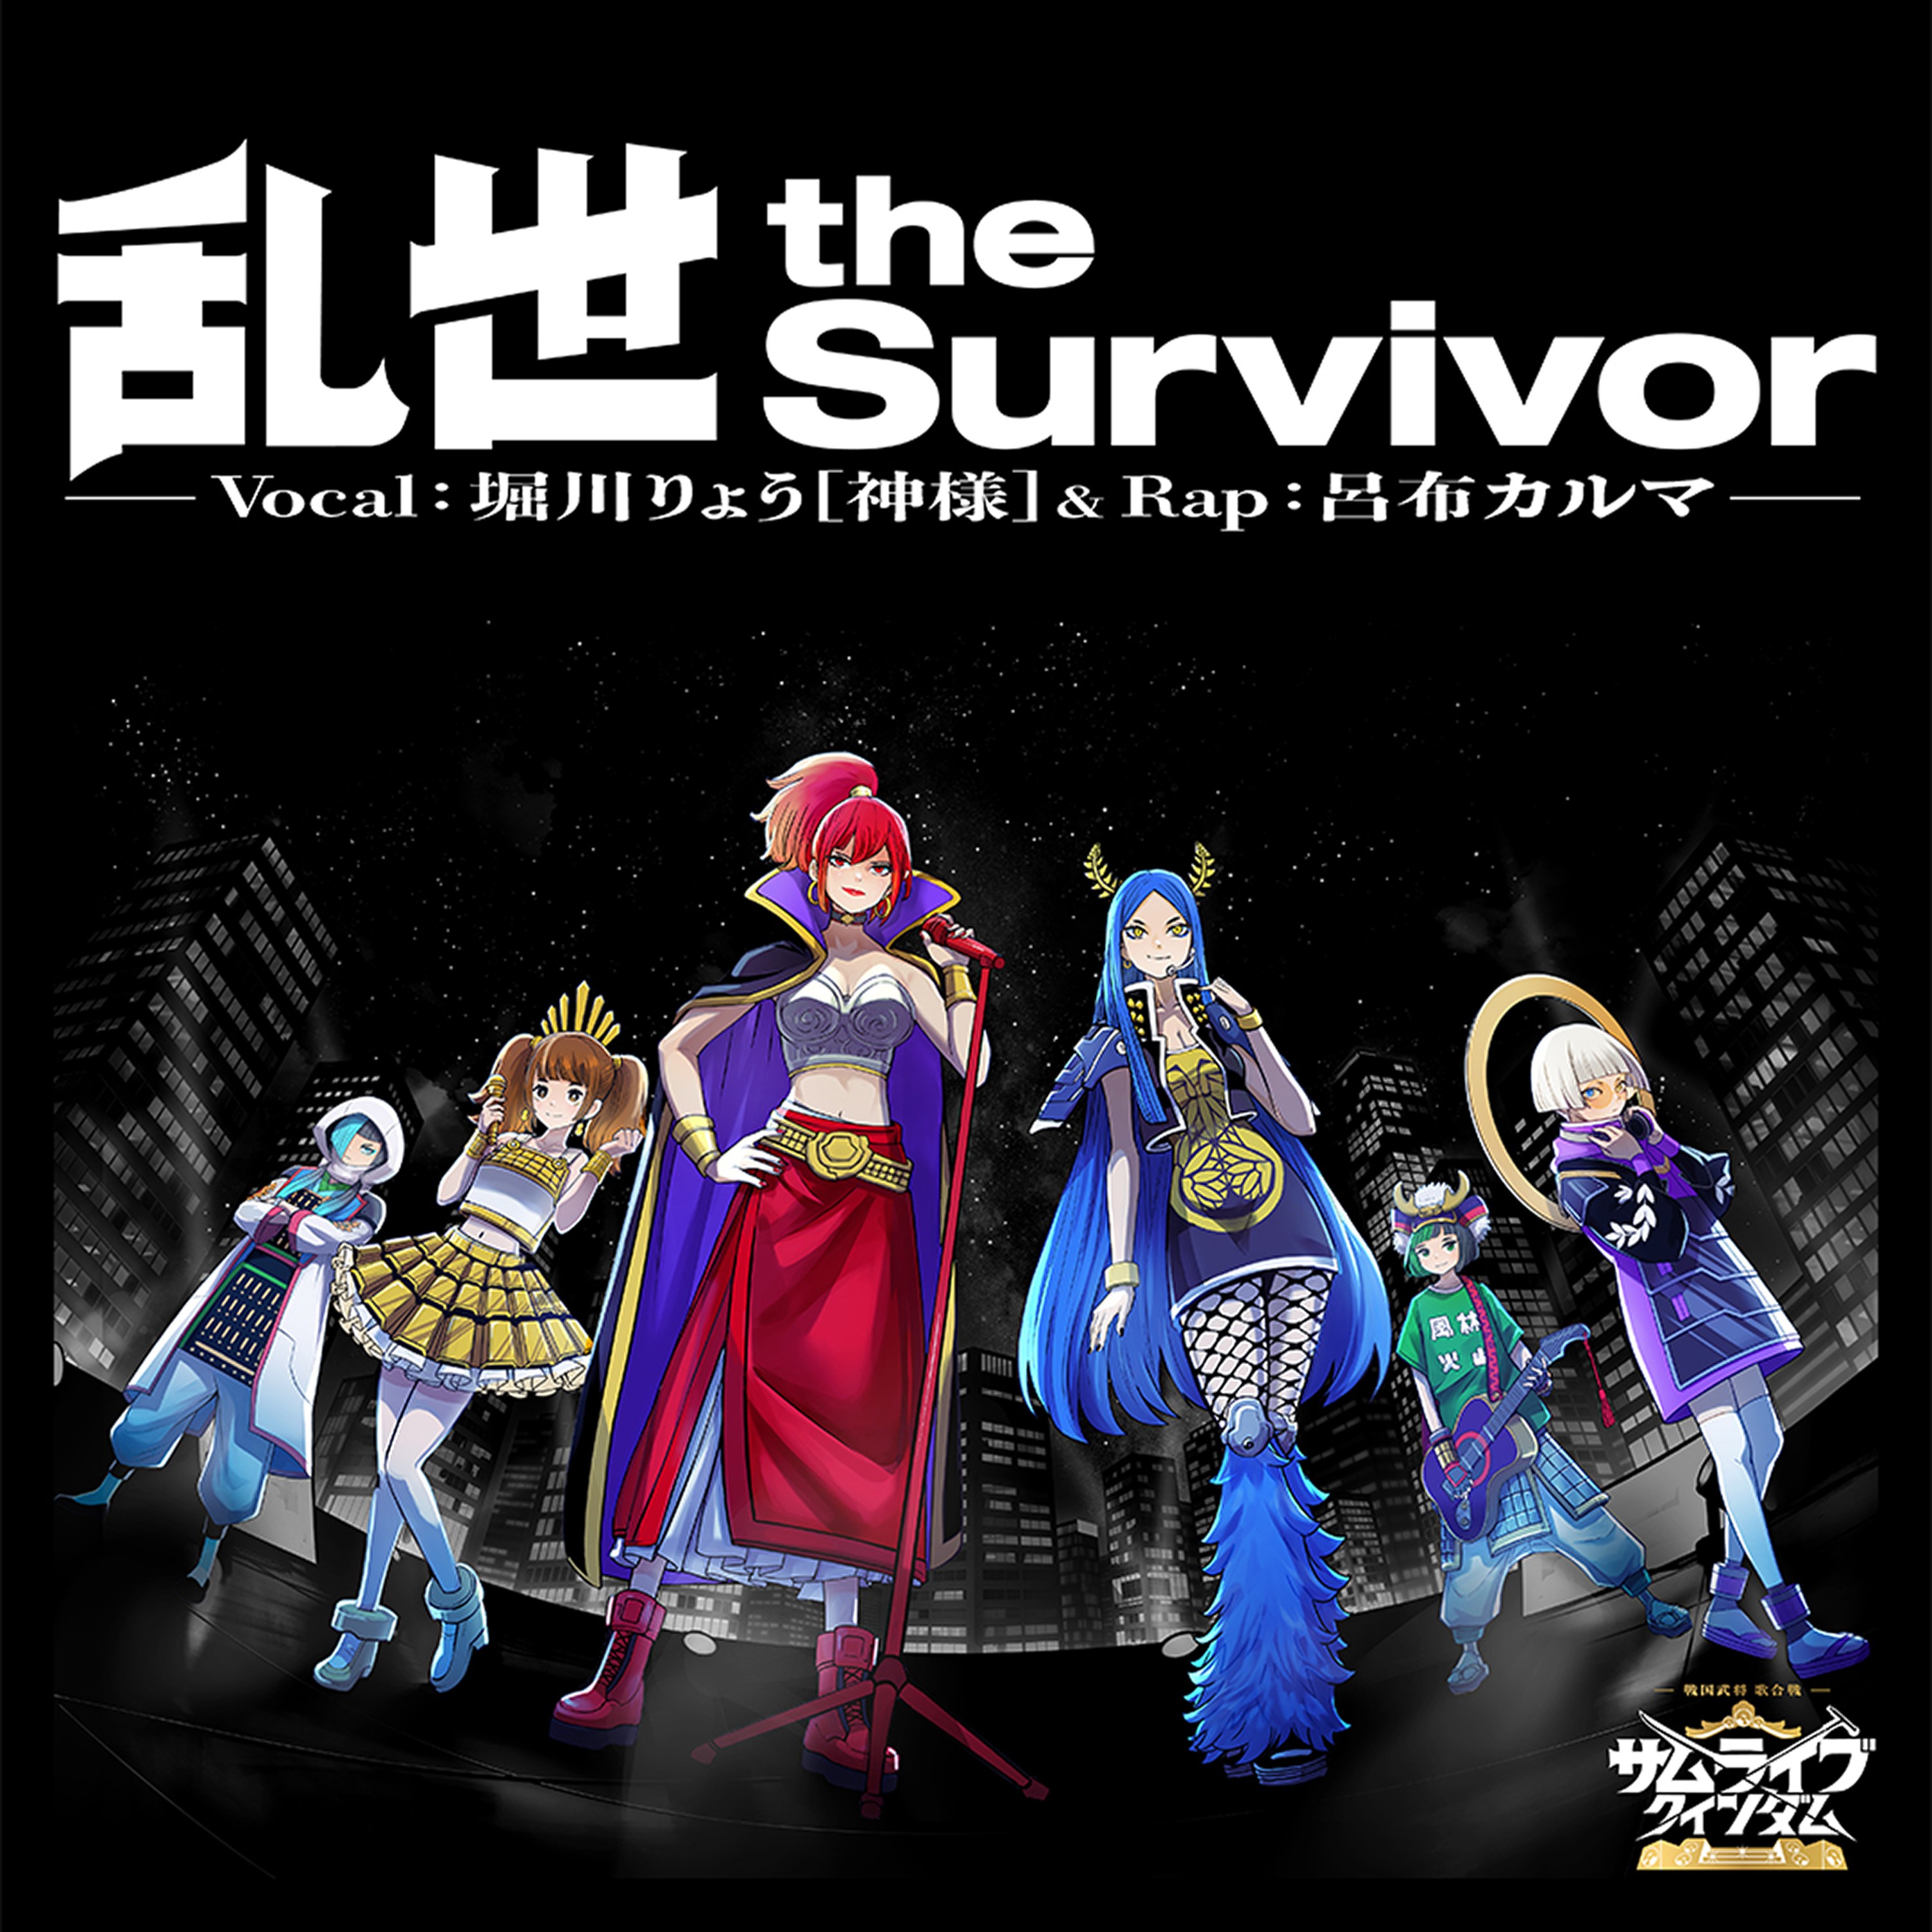 『乱世 the Survivor』 From Vocal：堀川りょう［神様］& Rap：呂布カルマ